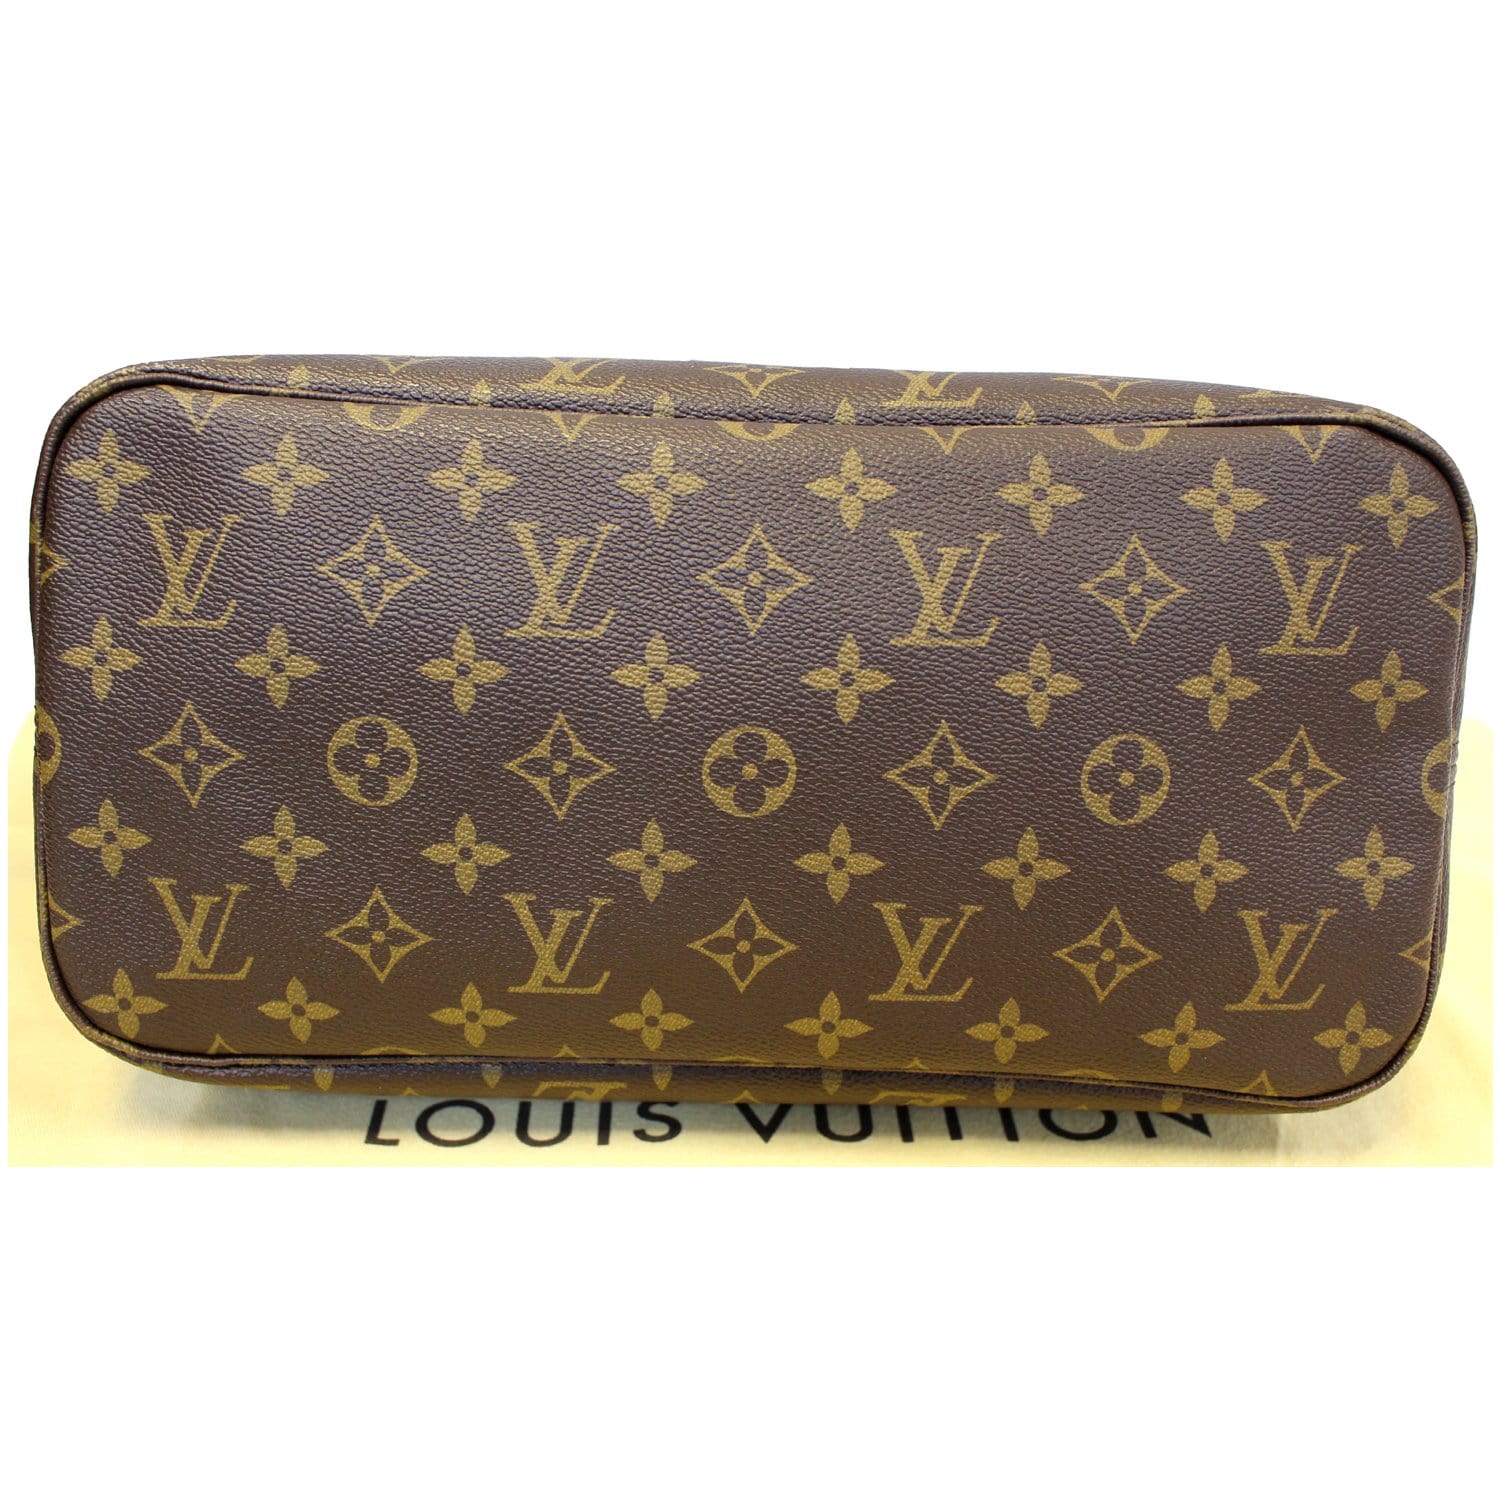 Louis Vuitton, Bags, Authentic Vintage Louis Vuitton Neverfull Mm